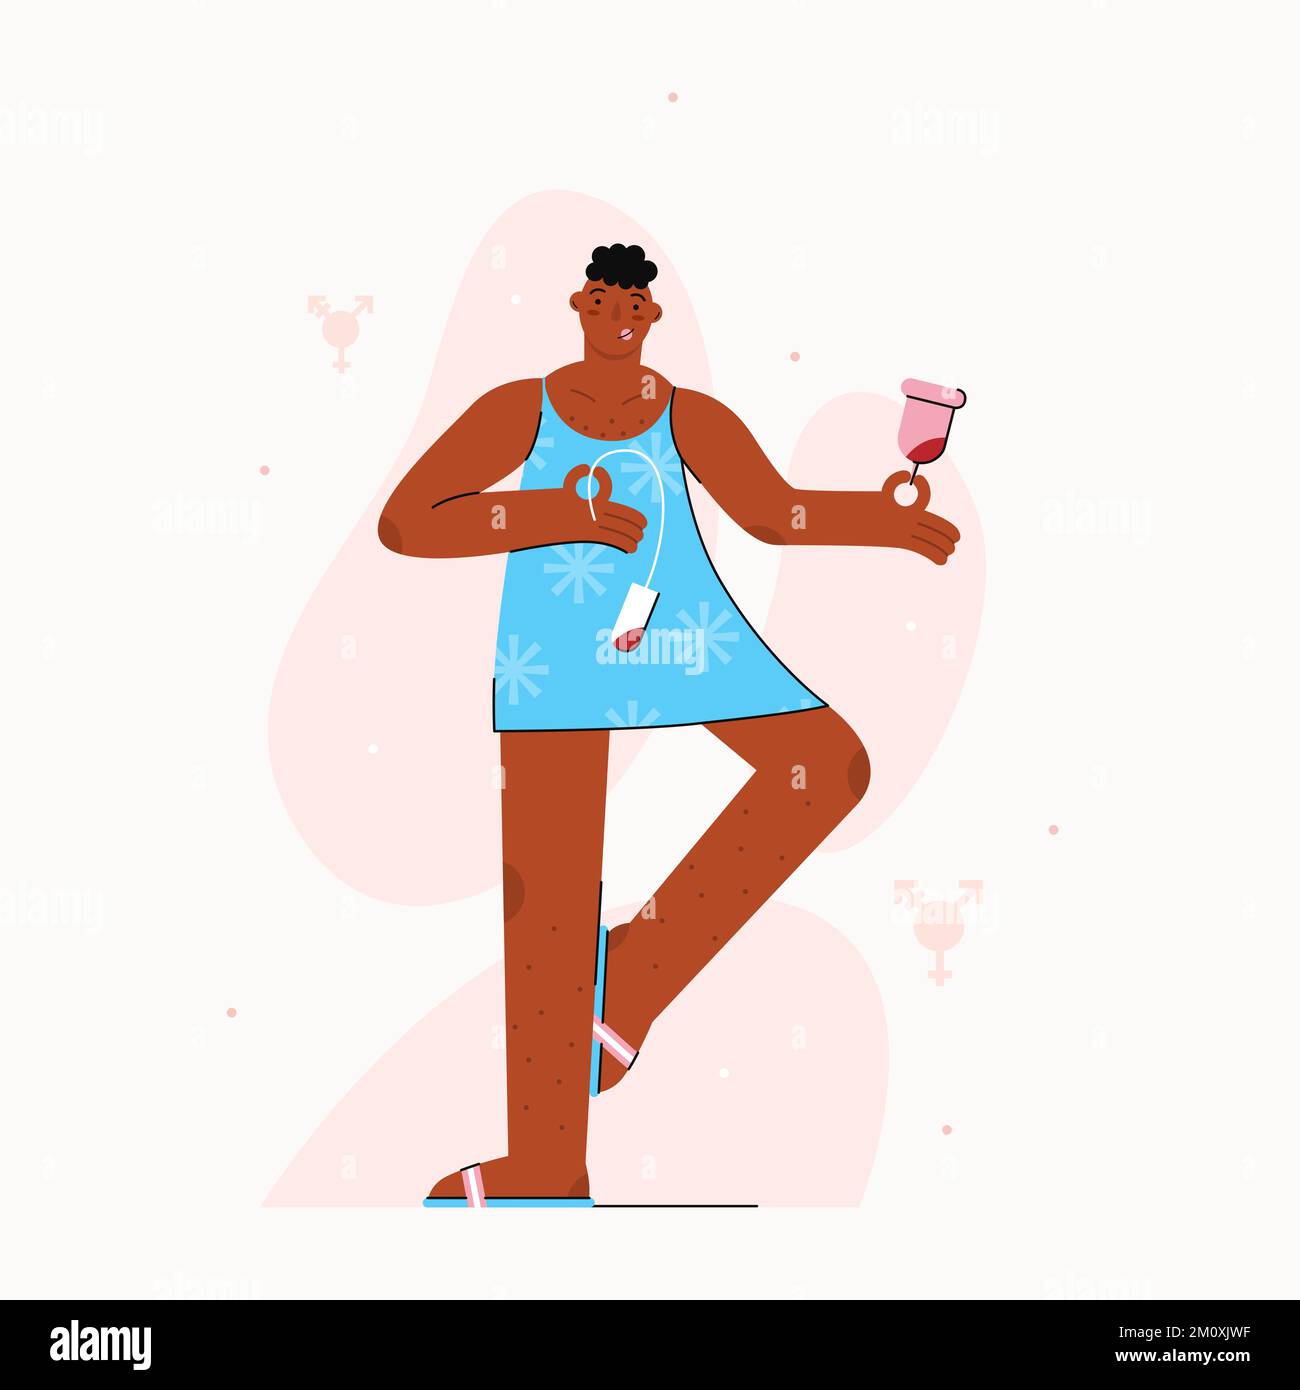 Menschen, die menstruieren. Vektordarstellung mit einer afroamerikanischen Transgender-Person, die monatliche Zyklen zeigt, mit Menstruationstupfer und Tampon-Zeichnung i Stock Vektor